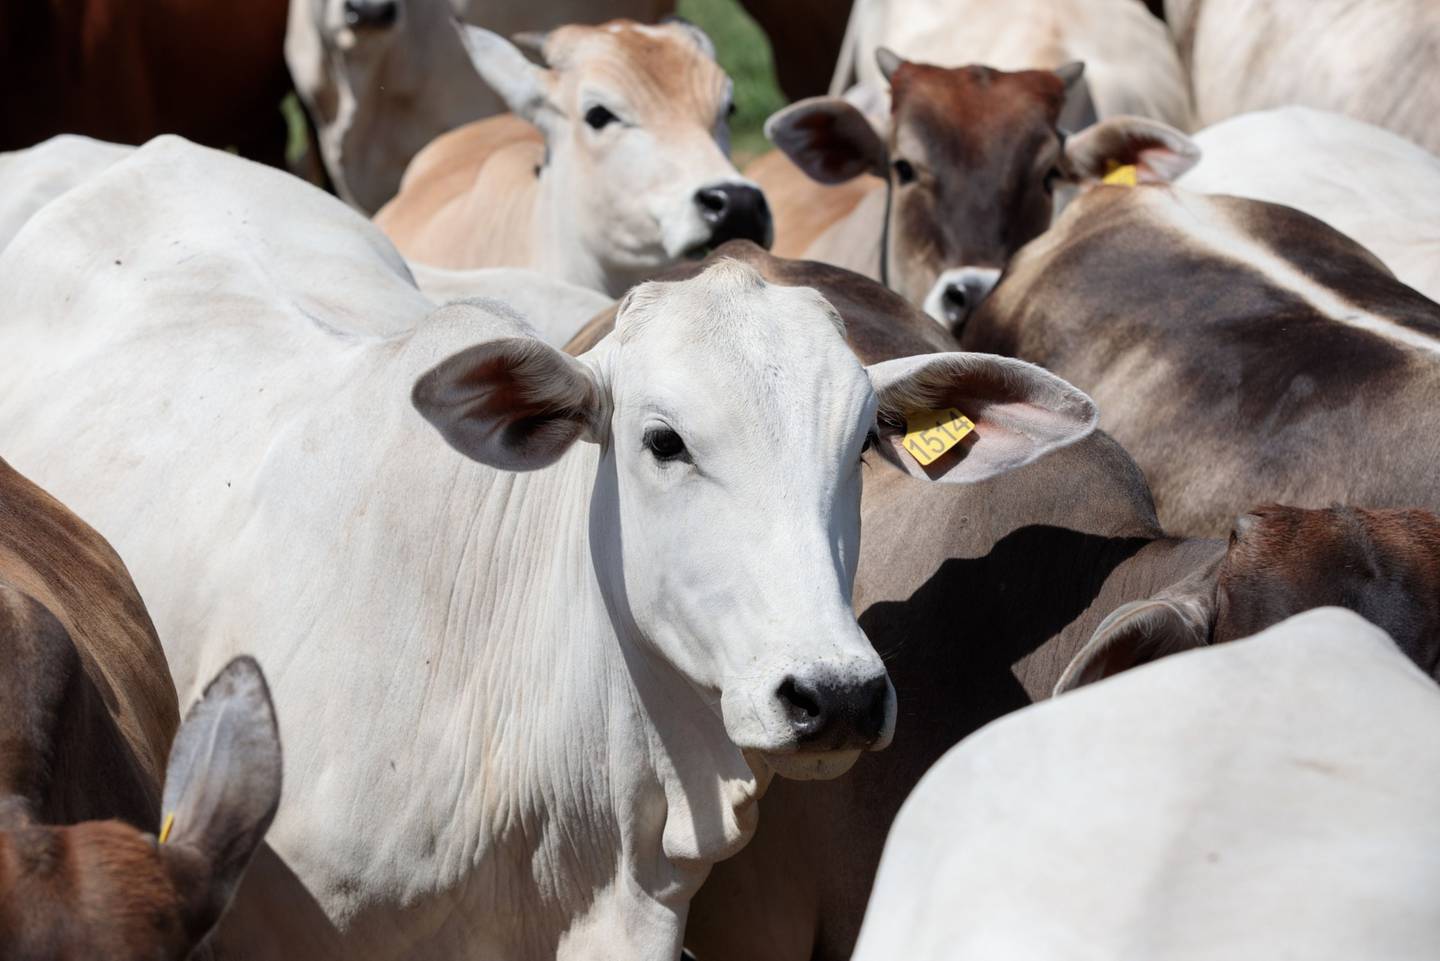 Maior em agricultura, SLC deve acelerar investimento para expandir produção de gado